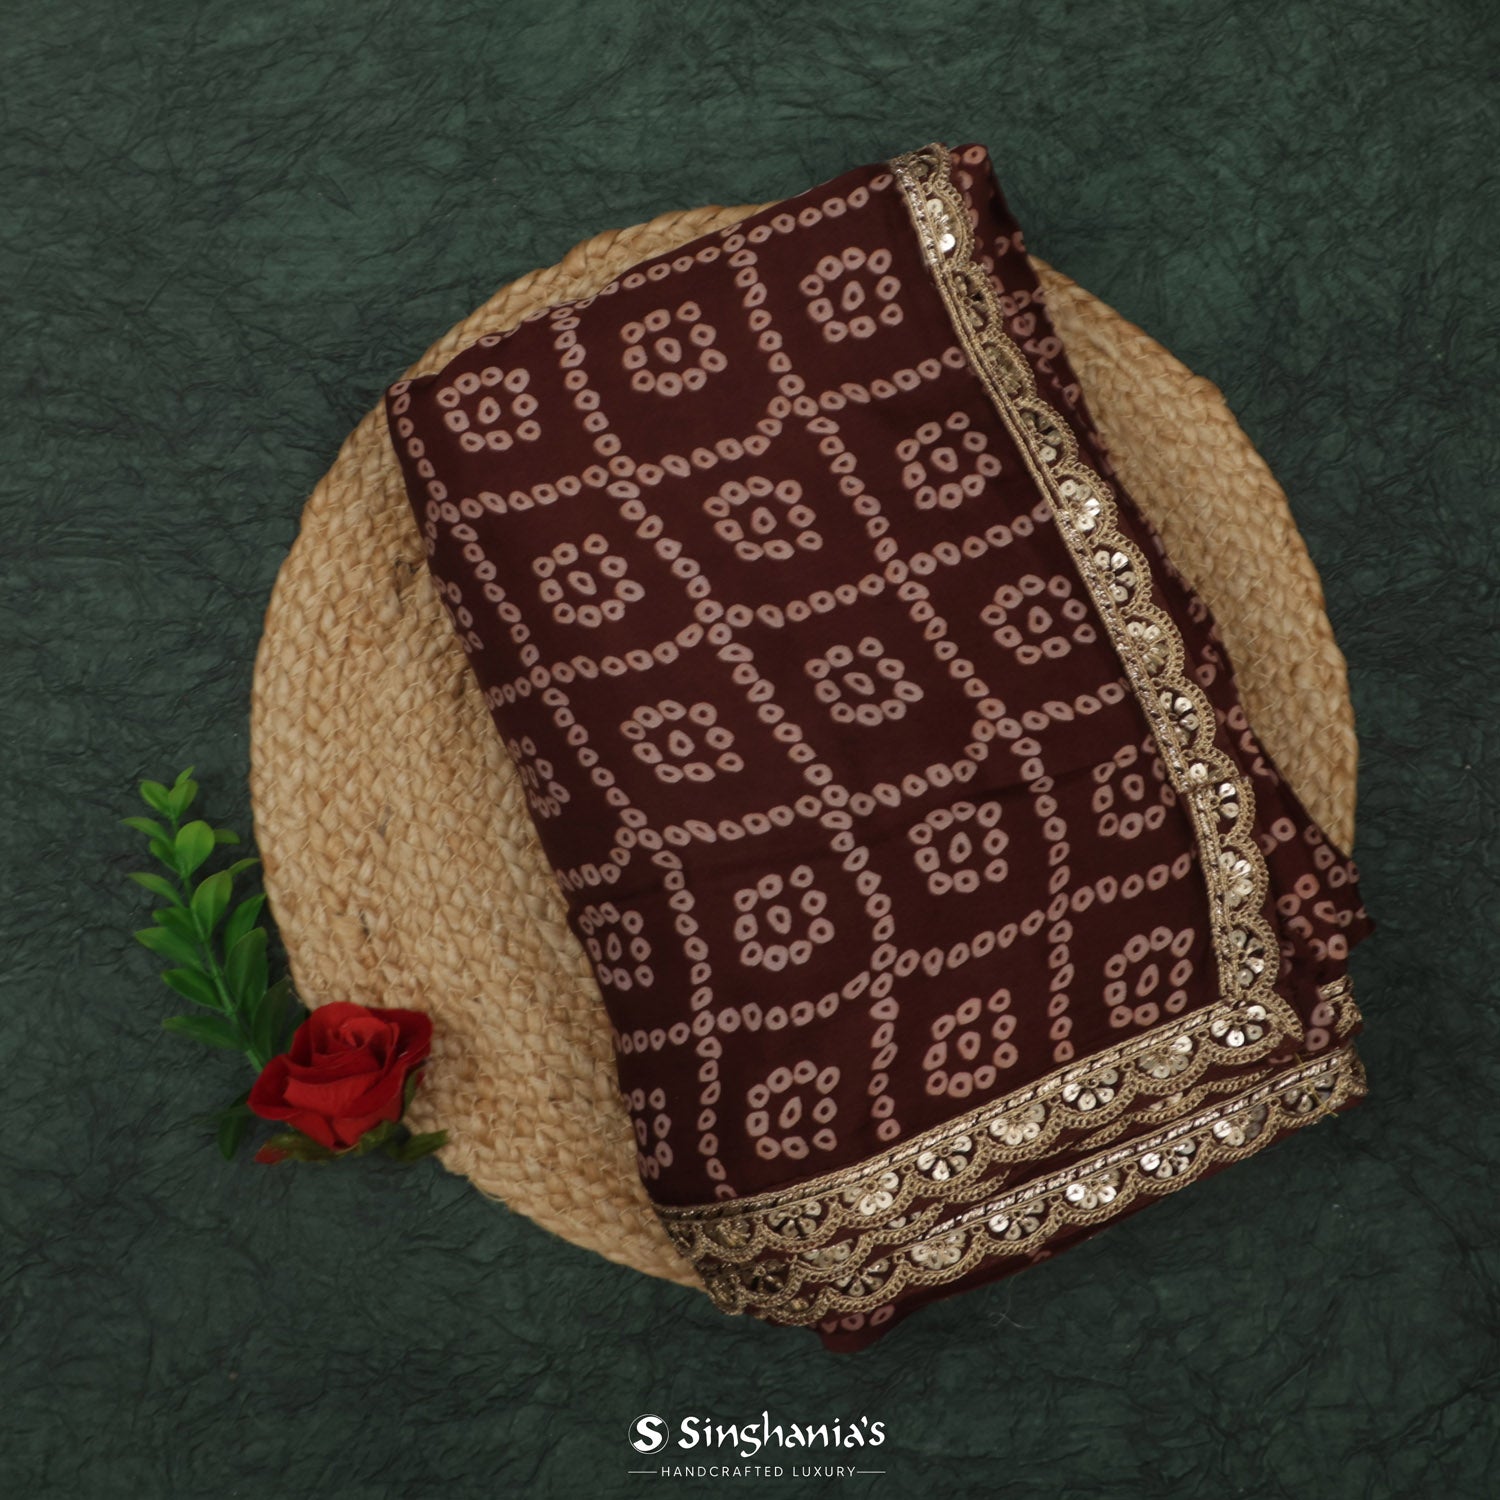 Dark Brown Printed Silk Saree With Bandhani Pattern